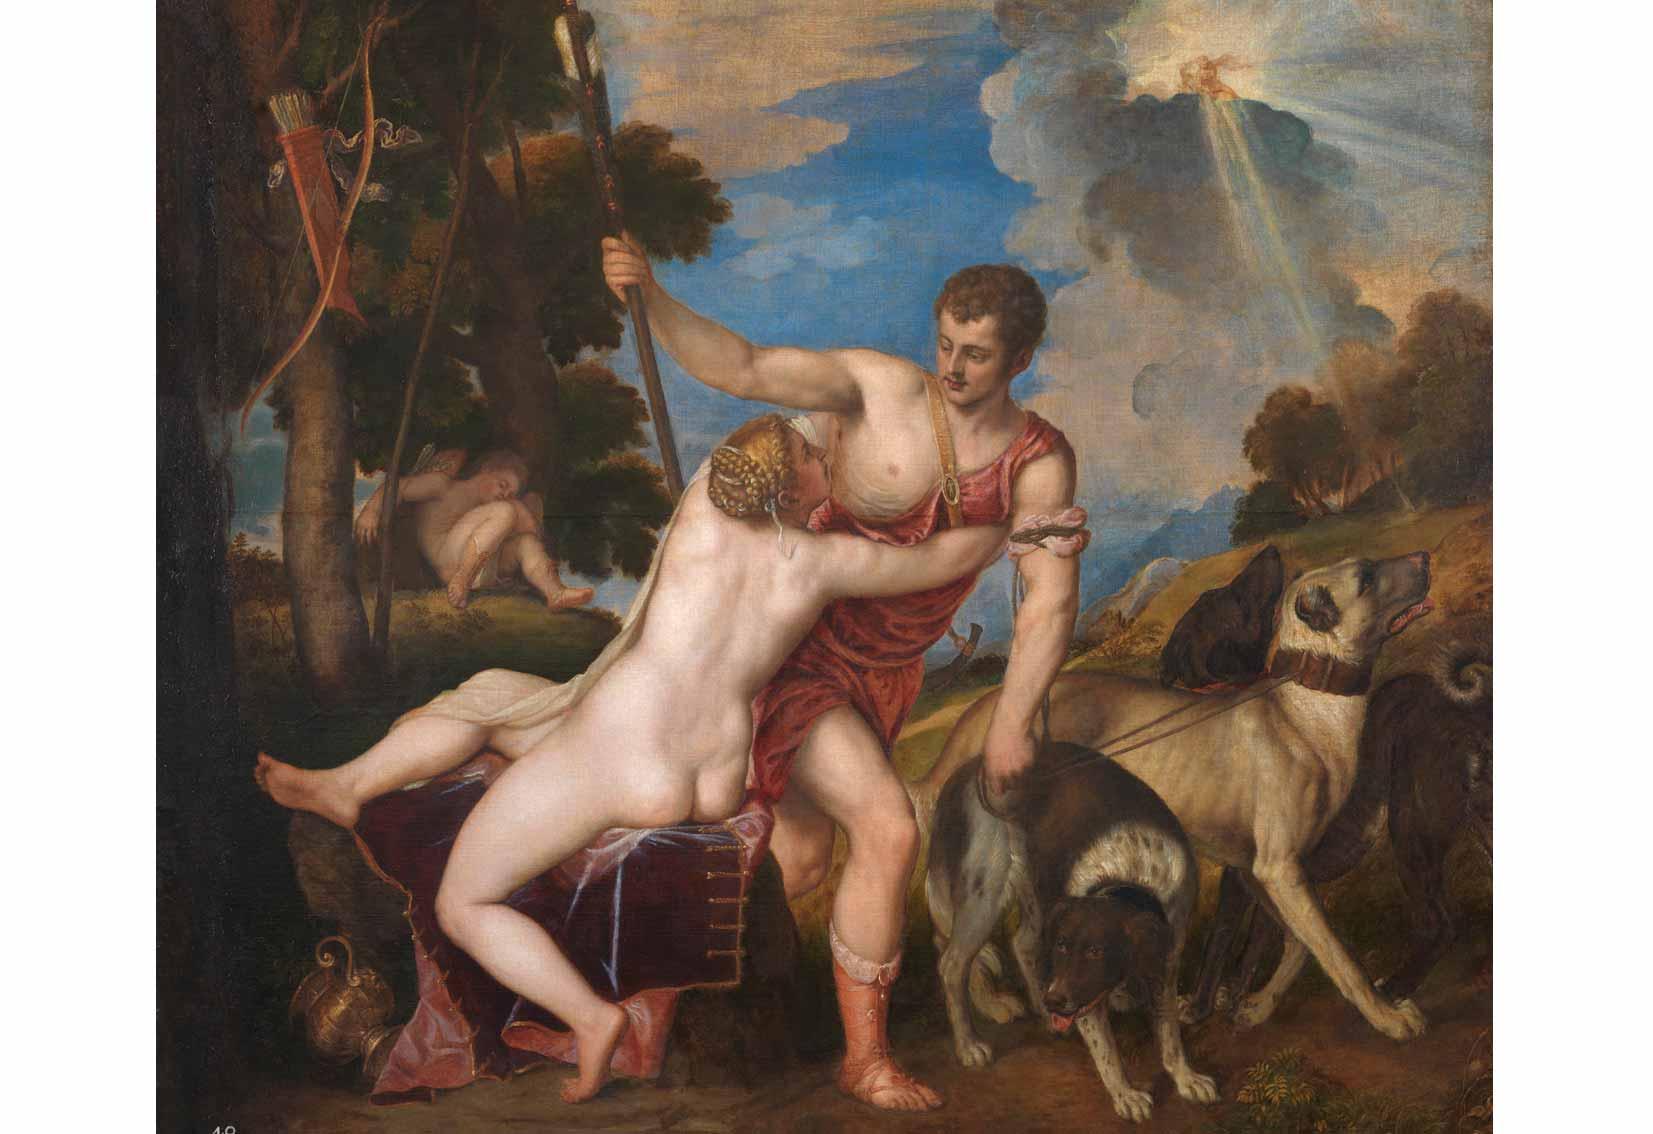 Titian, Venus and Adonis, 1554.